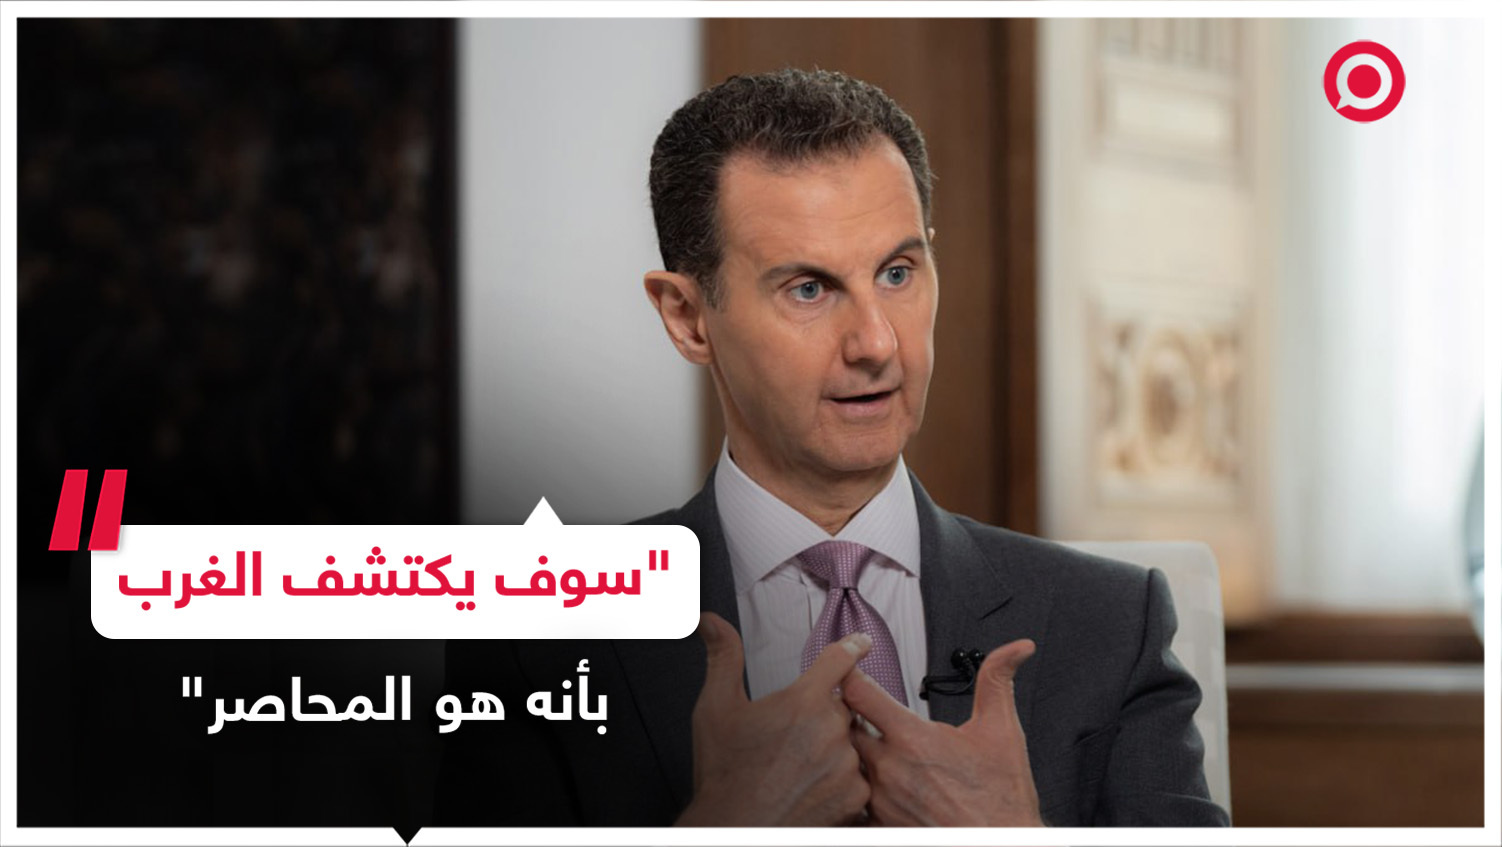 الرئيس السوري بشار الأسد يسخر من العقوبات الغربية